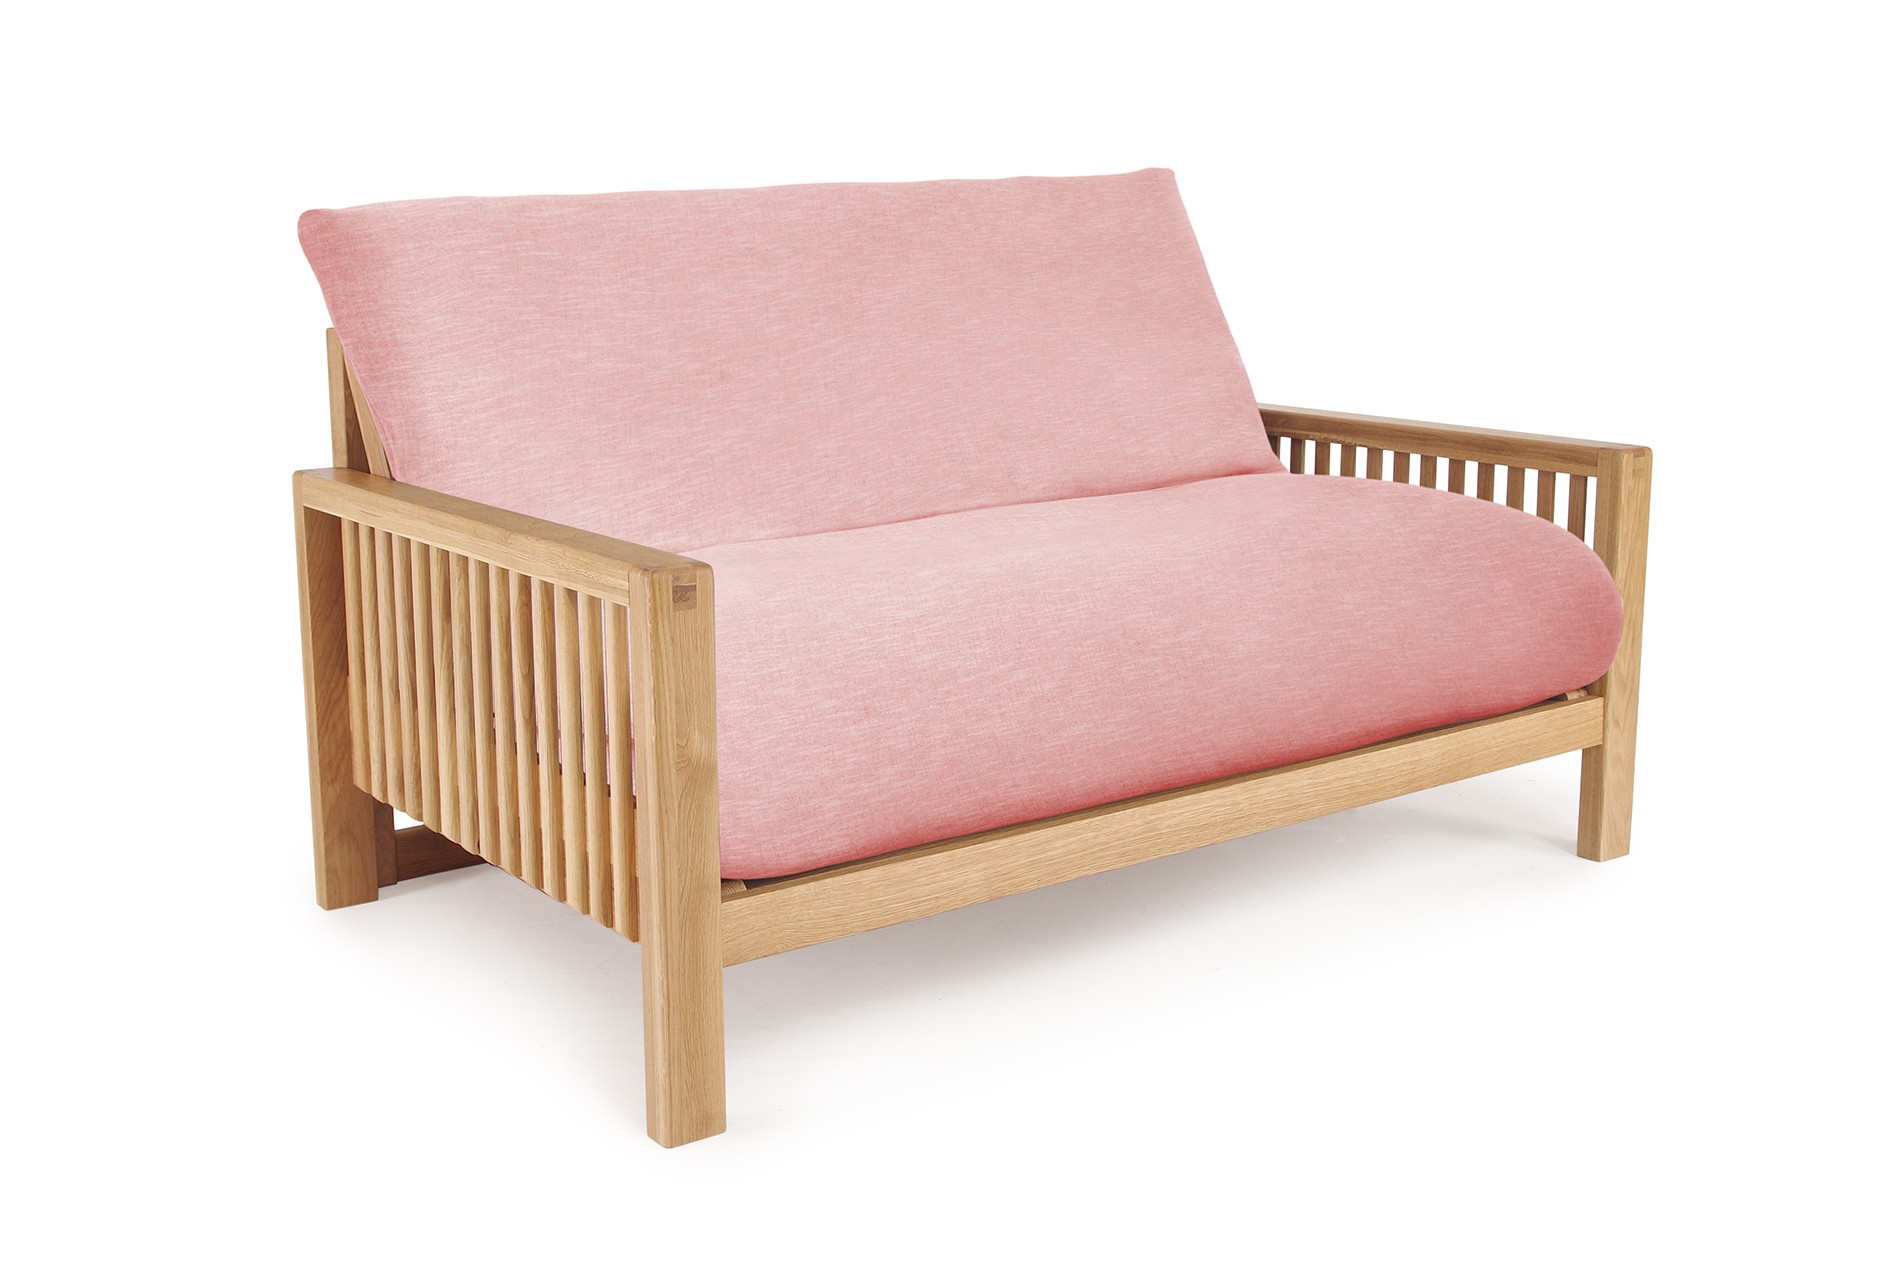 Oak Rondo Seat Sofa Bed Coast Weave Sandstone Pink